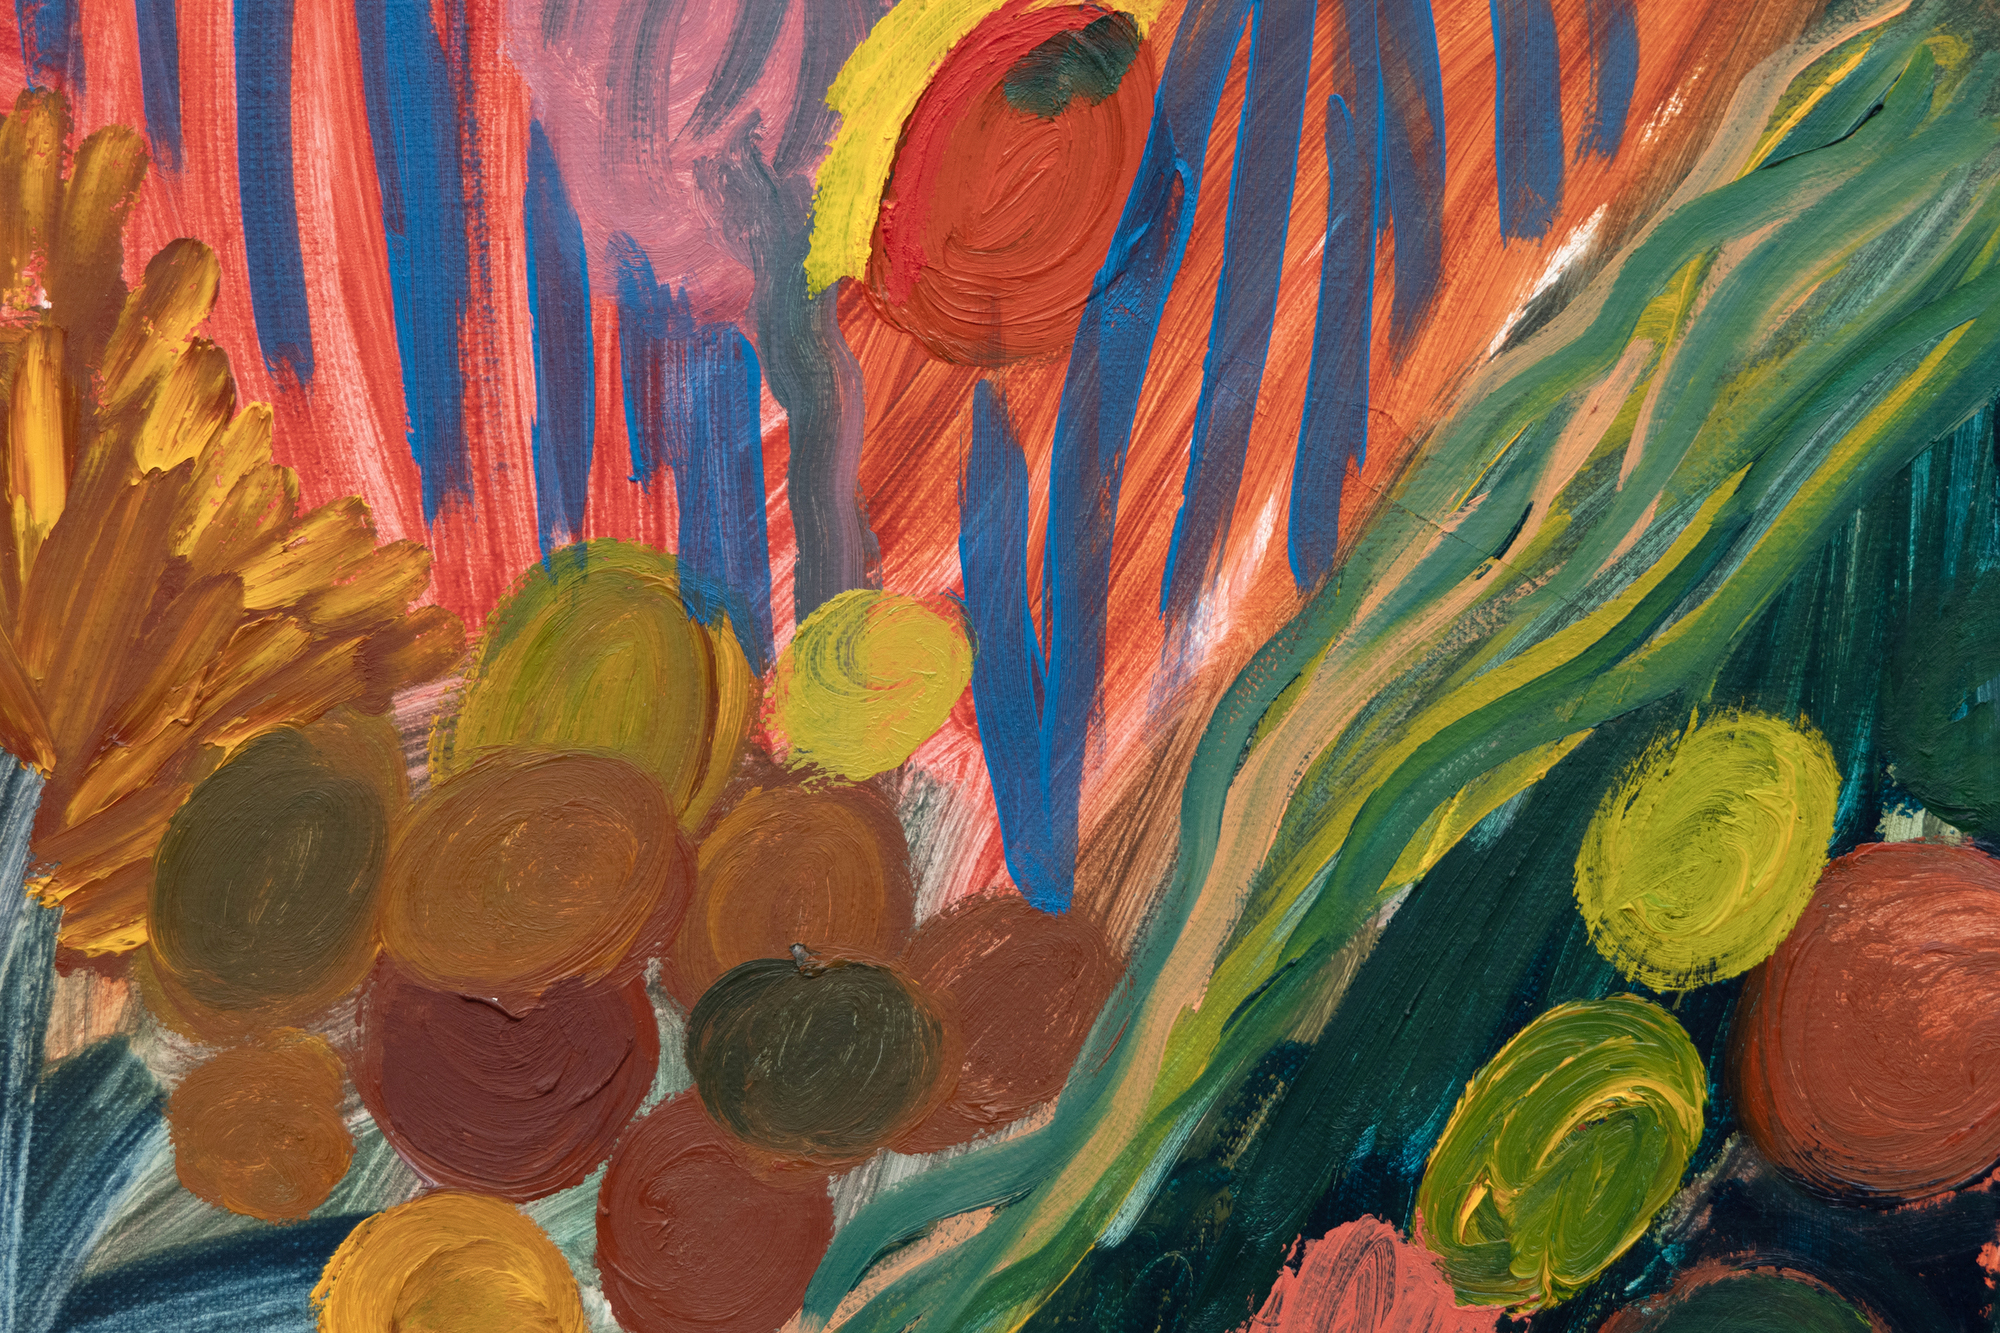 Die 1981 in Atlanta geborene und in Brooklyn lebende Shara Hughes wird für ihre unverwechselbare Herangehensweise an die Landschaftsmalerei gefeiert, die historische Einflüsse mit zeitgenössischer Sensibilität verbindet. Ihre jubilierende Farbpalette erinnert an Meister wie Henri Matisse, die sie mit der stilvollen, visuellen Kühnheit von David Hockney wiedergibt, während sie gleichzeitig eine breitere Tradition der Landschaftsmalerei anerkennt, die Einflüsse des Jugendstils, des Fauvismus und des deutschen Expressionismus einschließt. All the Pretty Faces ist eine moderne Synthese aus historischen Kunstbewegungen und aktueller digitaler Bildsprache, die dem Betrachter fesselnde, erfundene Welten präsentiert, die eine Brücke zwischen Vergangenheit und Gegenwart schlagen. Es spricht auch eines der markantesten Zitate von Hughes über ihre innovativen Landschaften voller fantastischer Elemente an: &quot;Ich habe mir die Blumen und Bäume oft als Figuren vorgestellt. Manchmal nimmt sogar eine Welle oder eine Sonne auf dem Bild eine Persönlichkeit an, das hängt also davon ab, wie das Werk ausfällt.&quot;